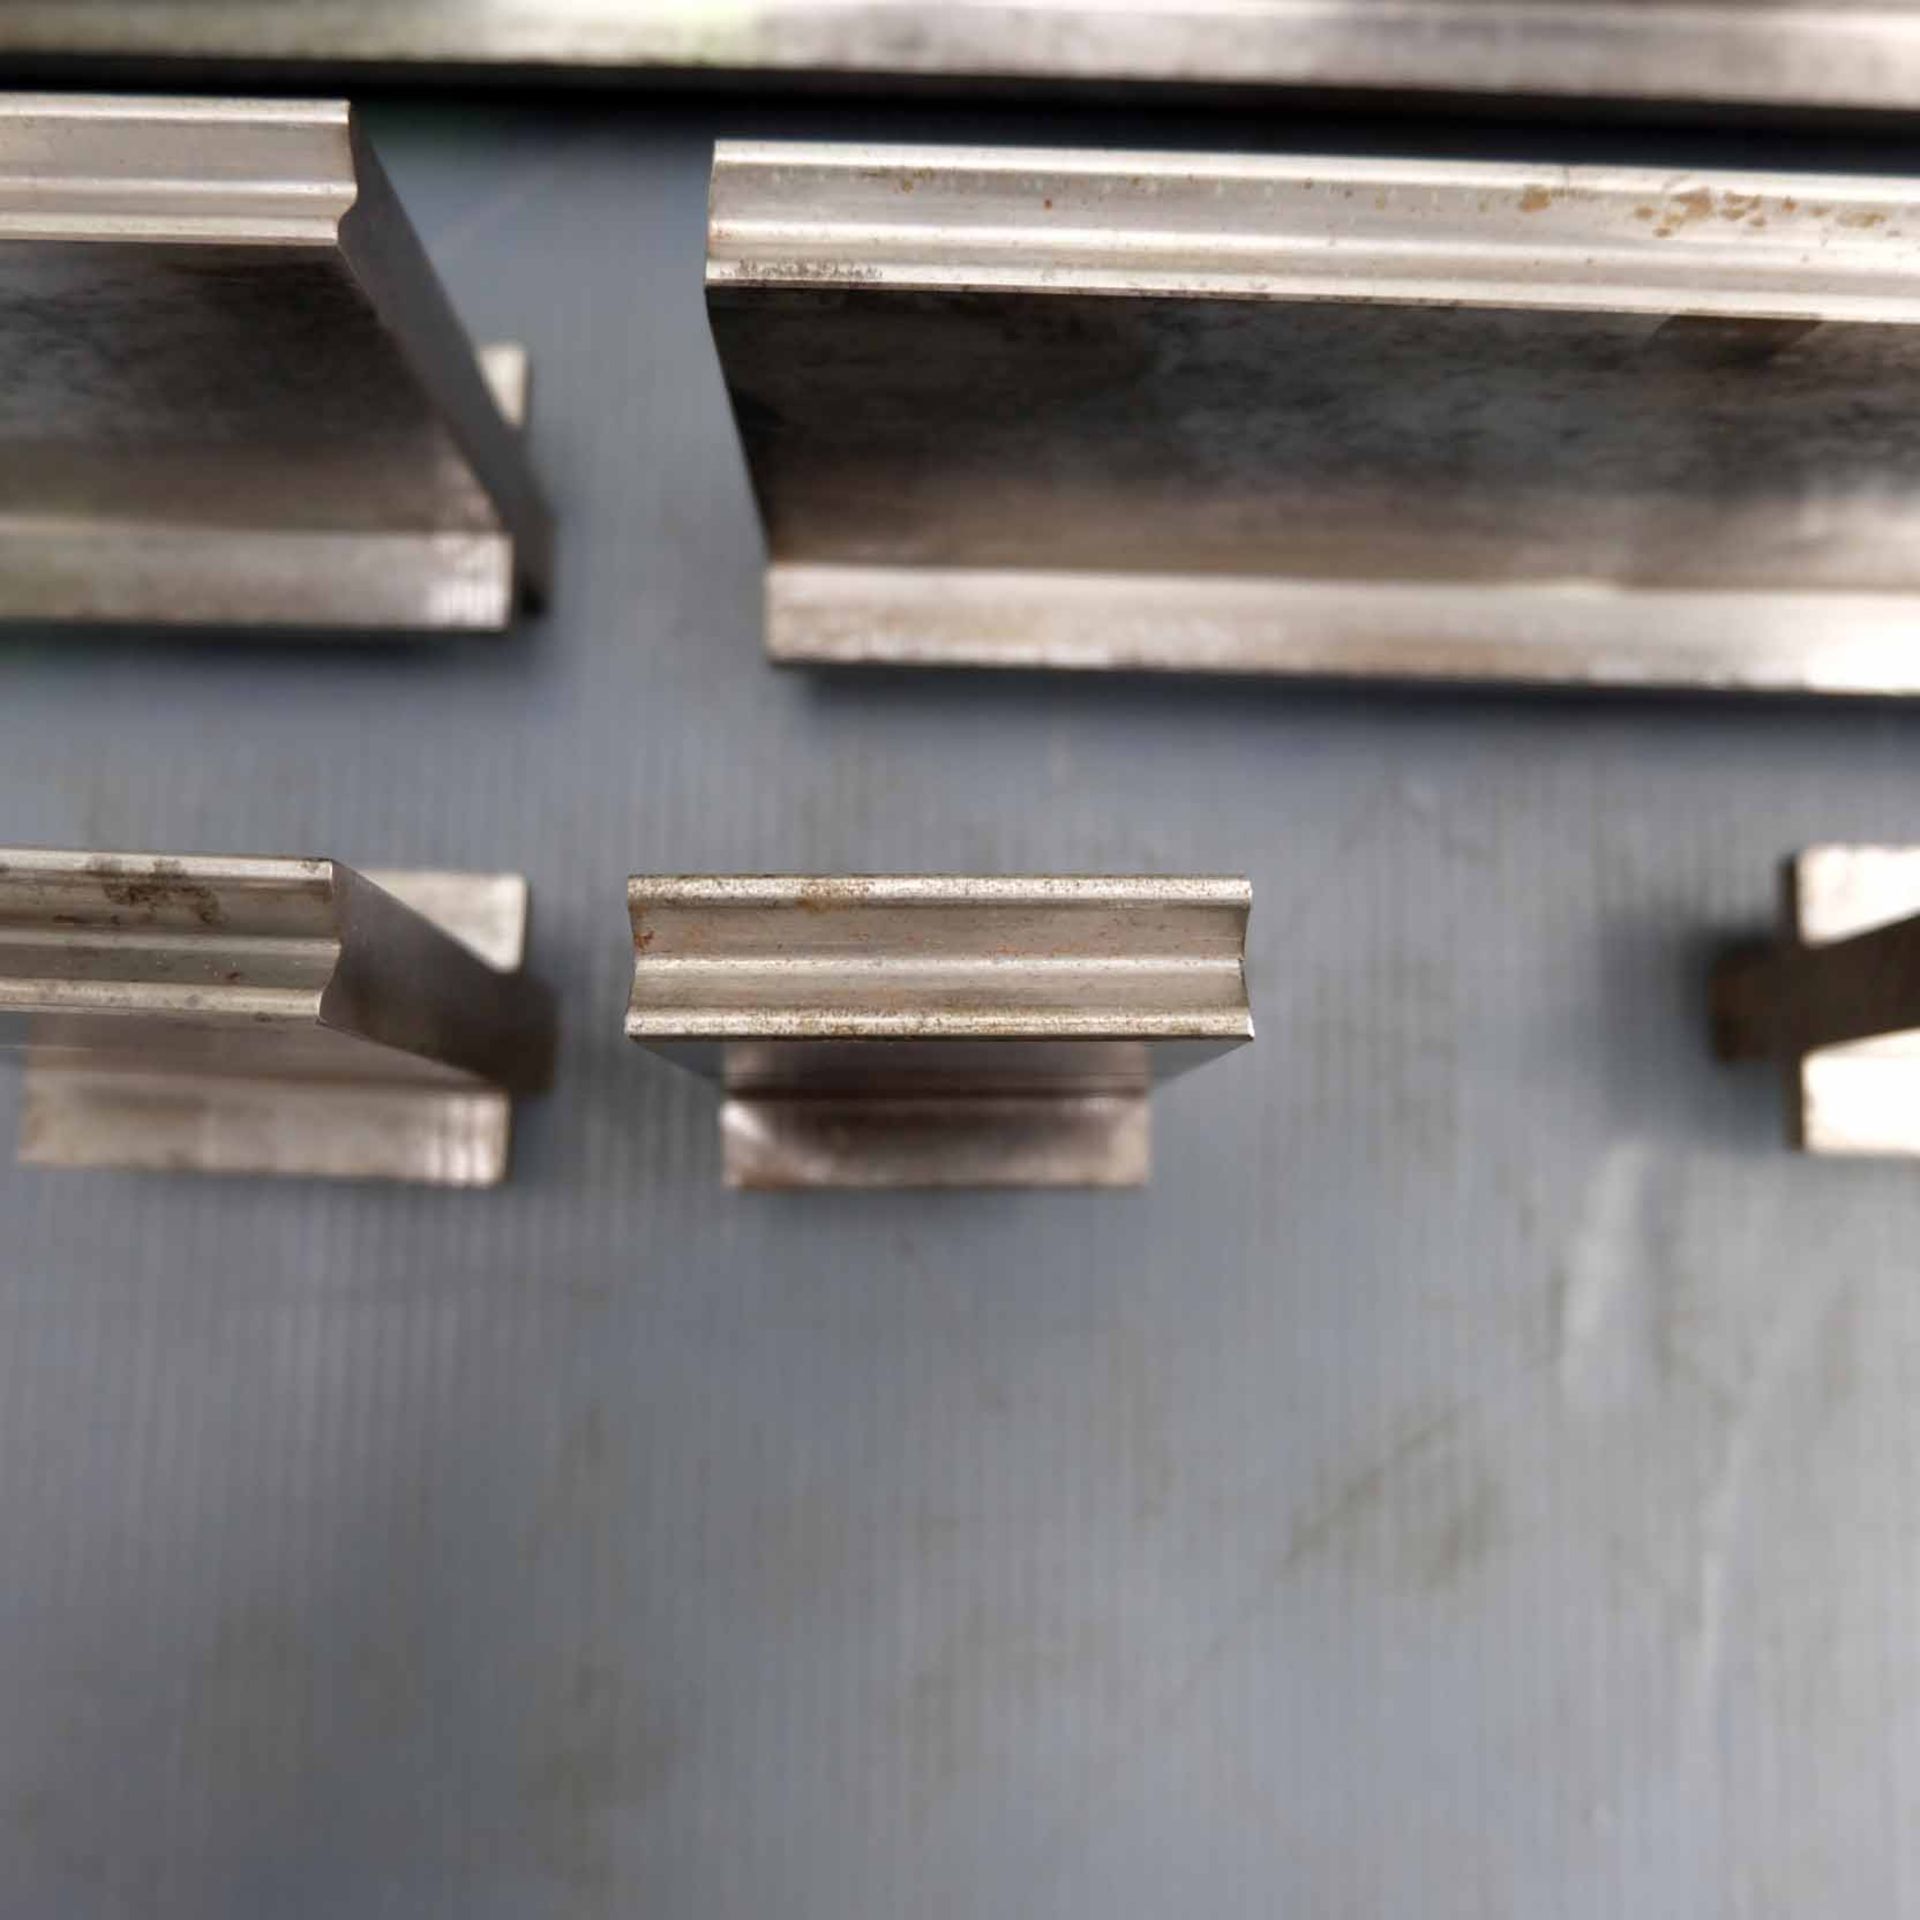 LVD Bottom Press Brake Tooling. Various Lengths. 680mm, 505mm, 398mm, 260mm, 170mm, 88mm, 50mm, 45mm - Bild 3 aus 5